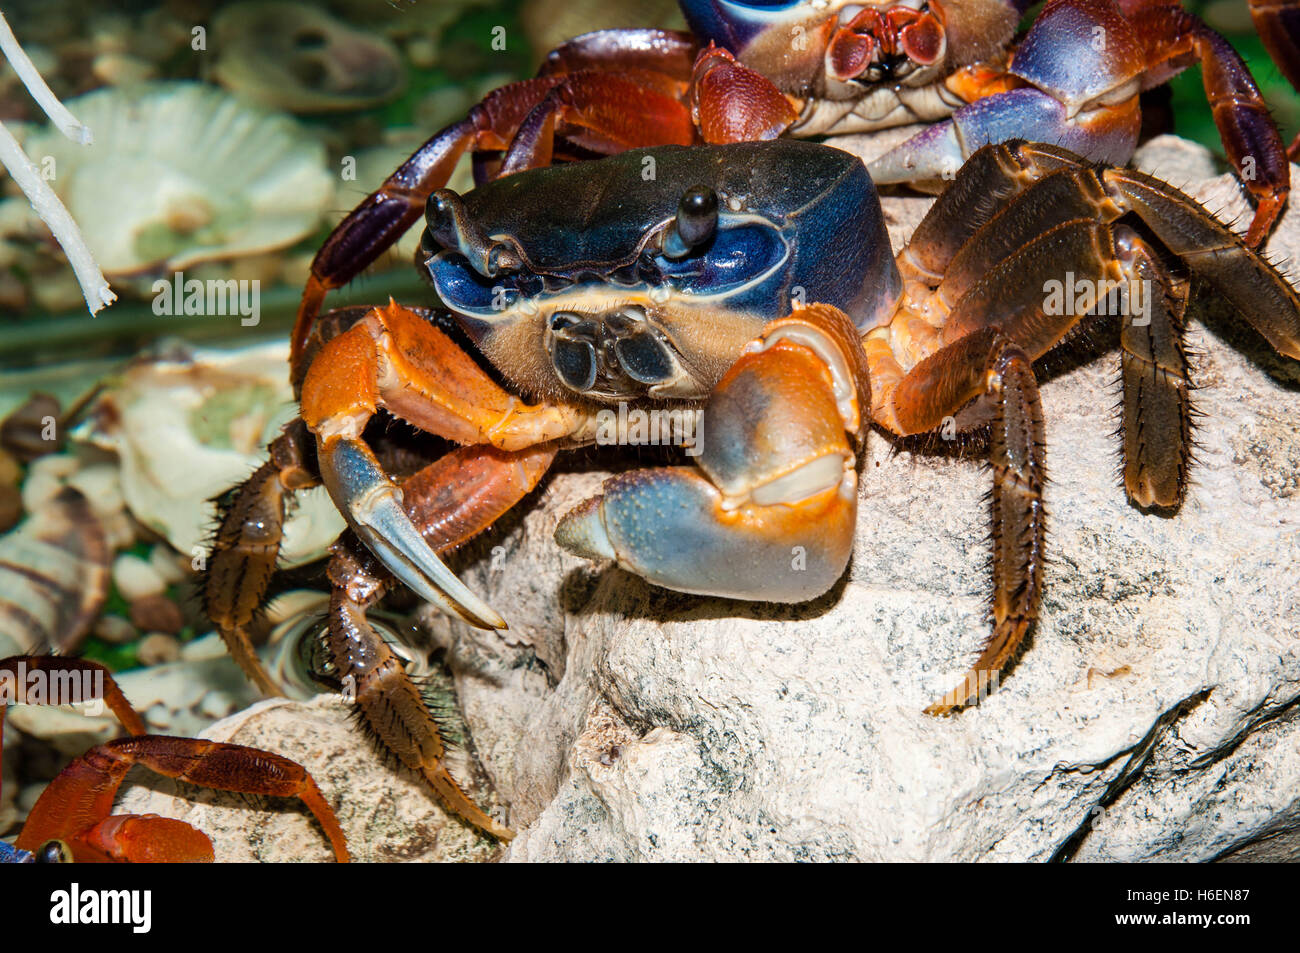 Rainbow crab or Cardisoma armatum in the Aquarium Stock Photo